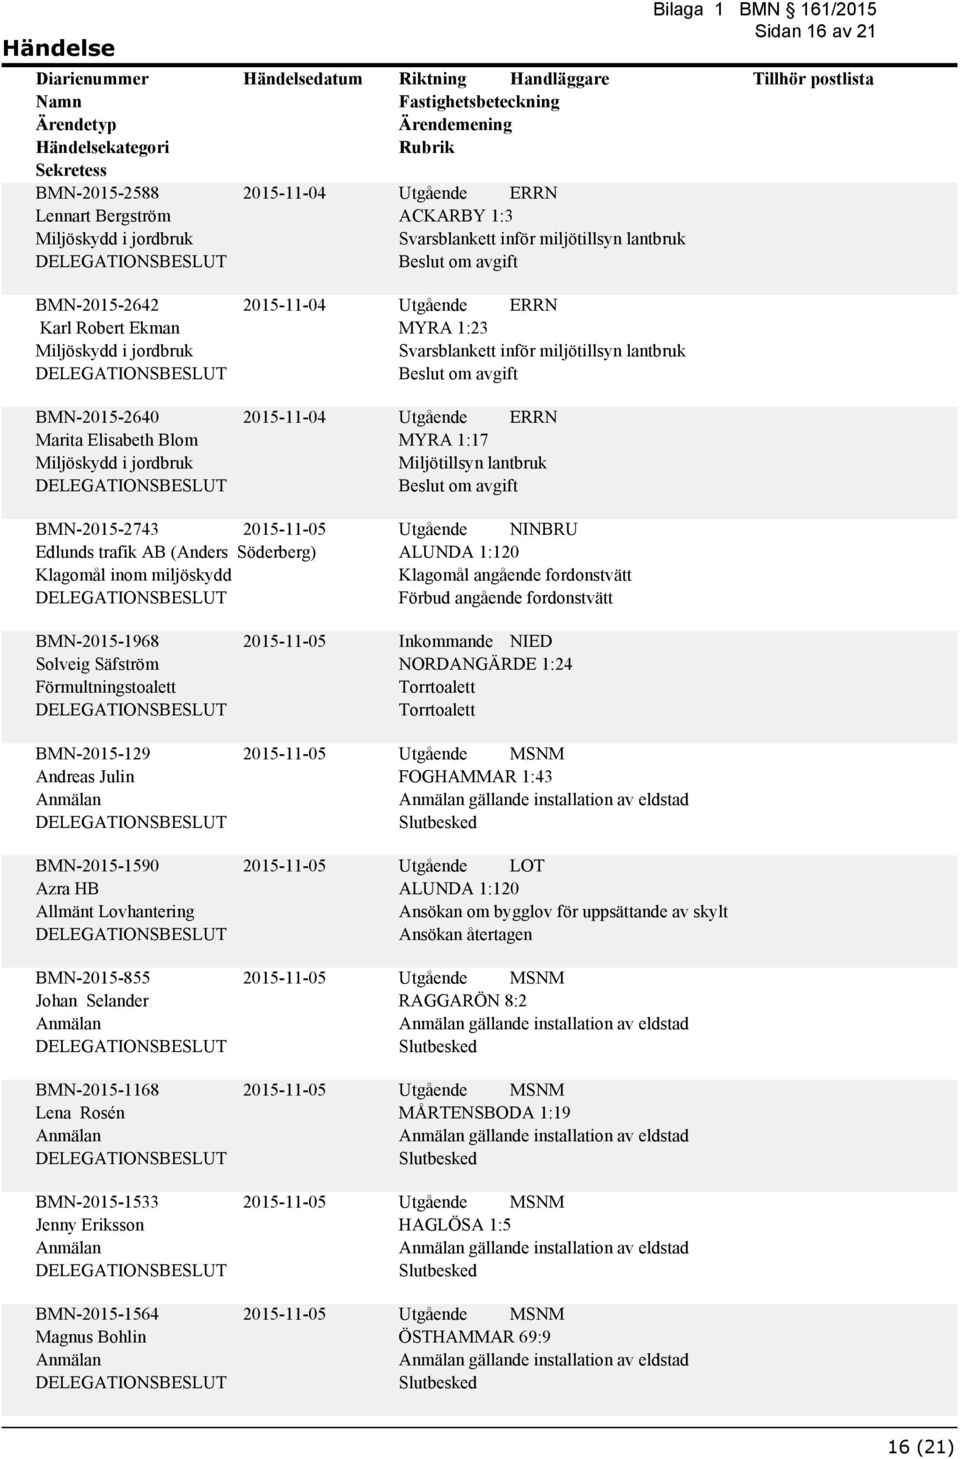 Klagomål angående fordonstvätt Förbud angående fordonstvätt BMN-2015-1968 Solveig Säfström Förmultningstoalett BMN-2015-129 Andreas Julin BMN-2015-1590 Azra HB Allmänt Lovhantering BMN-2015-855 Johan